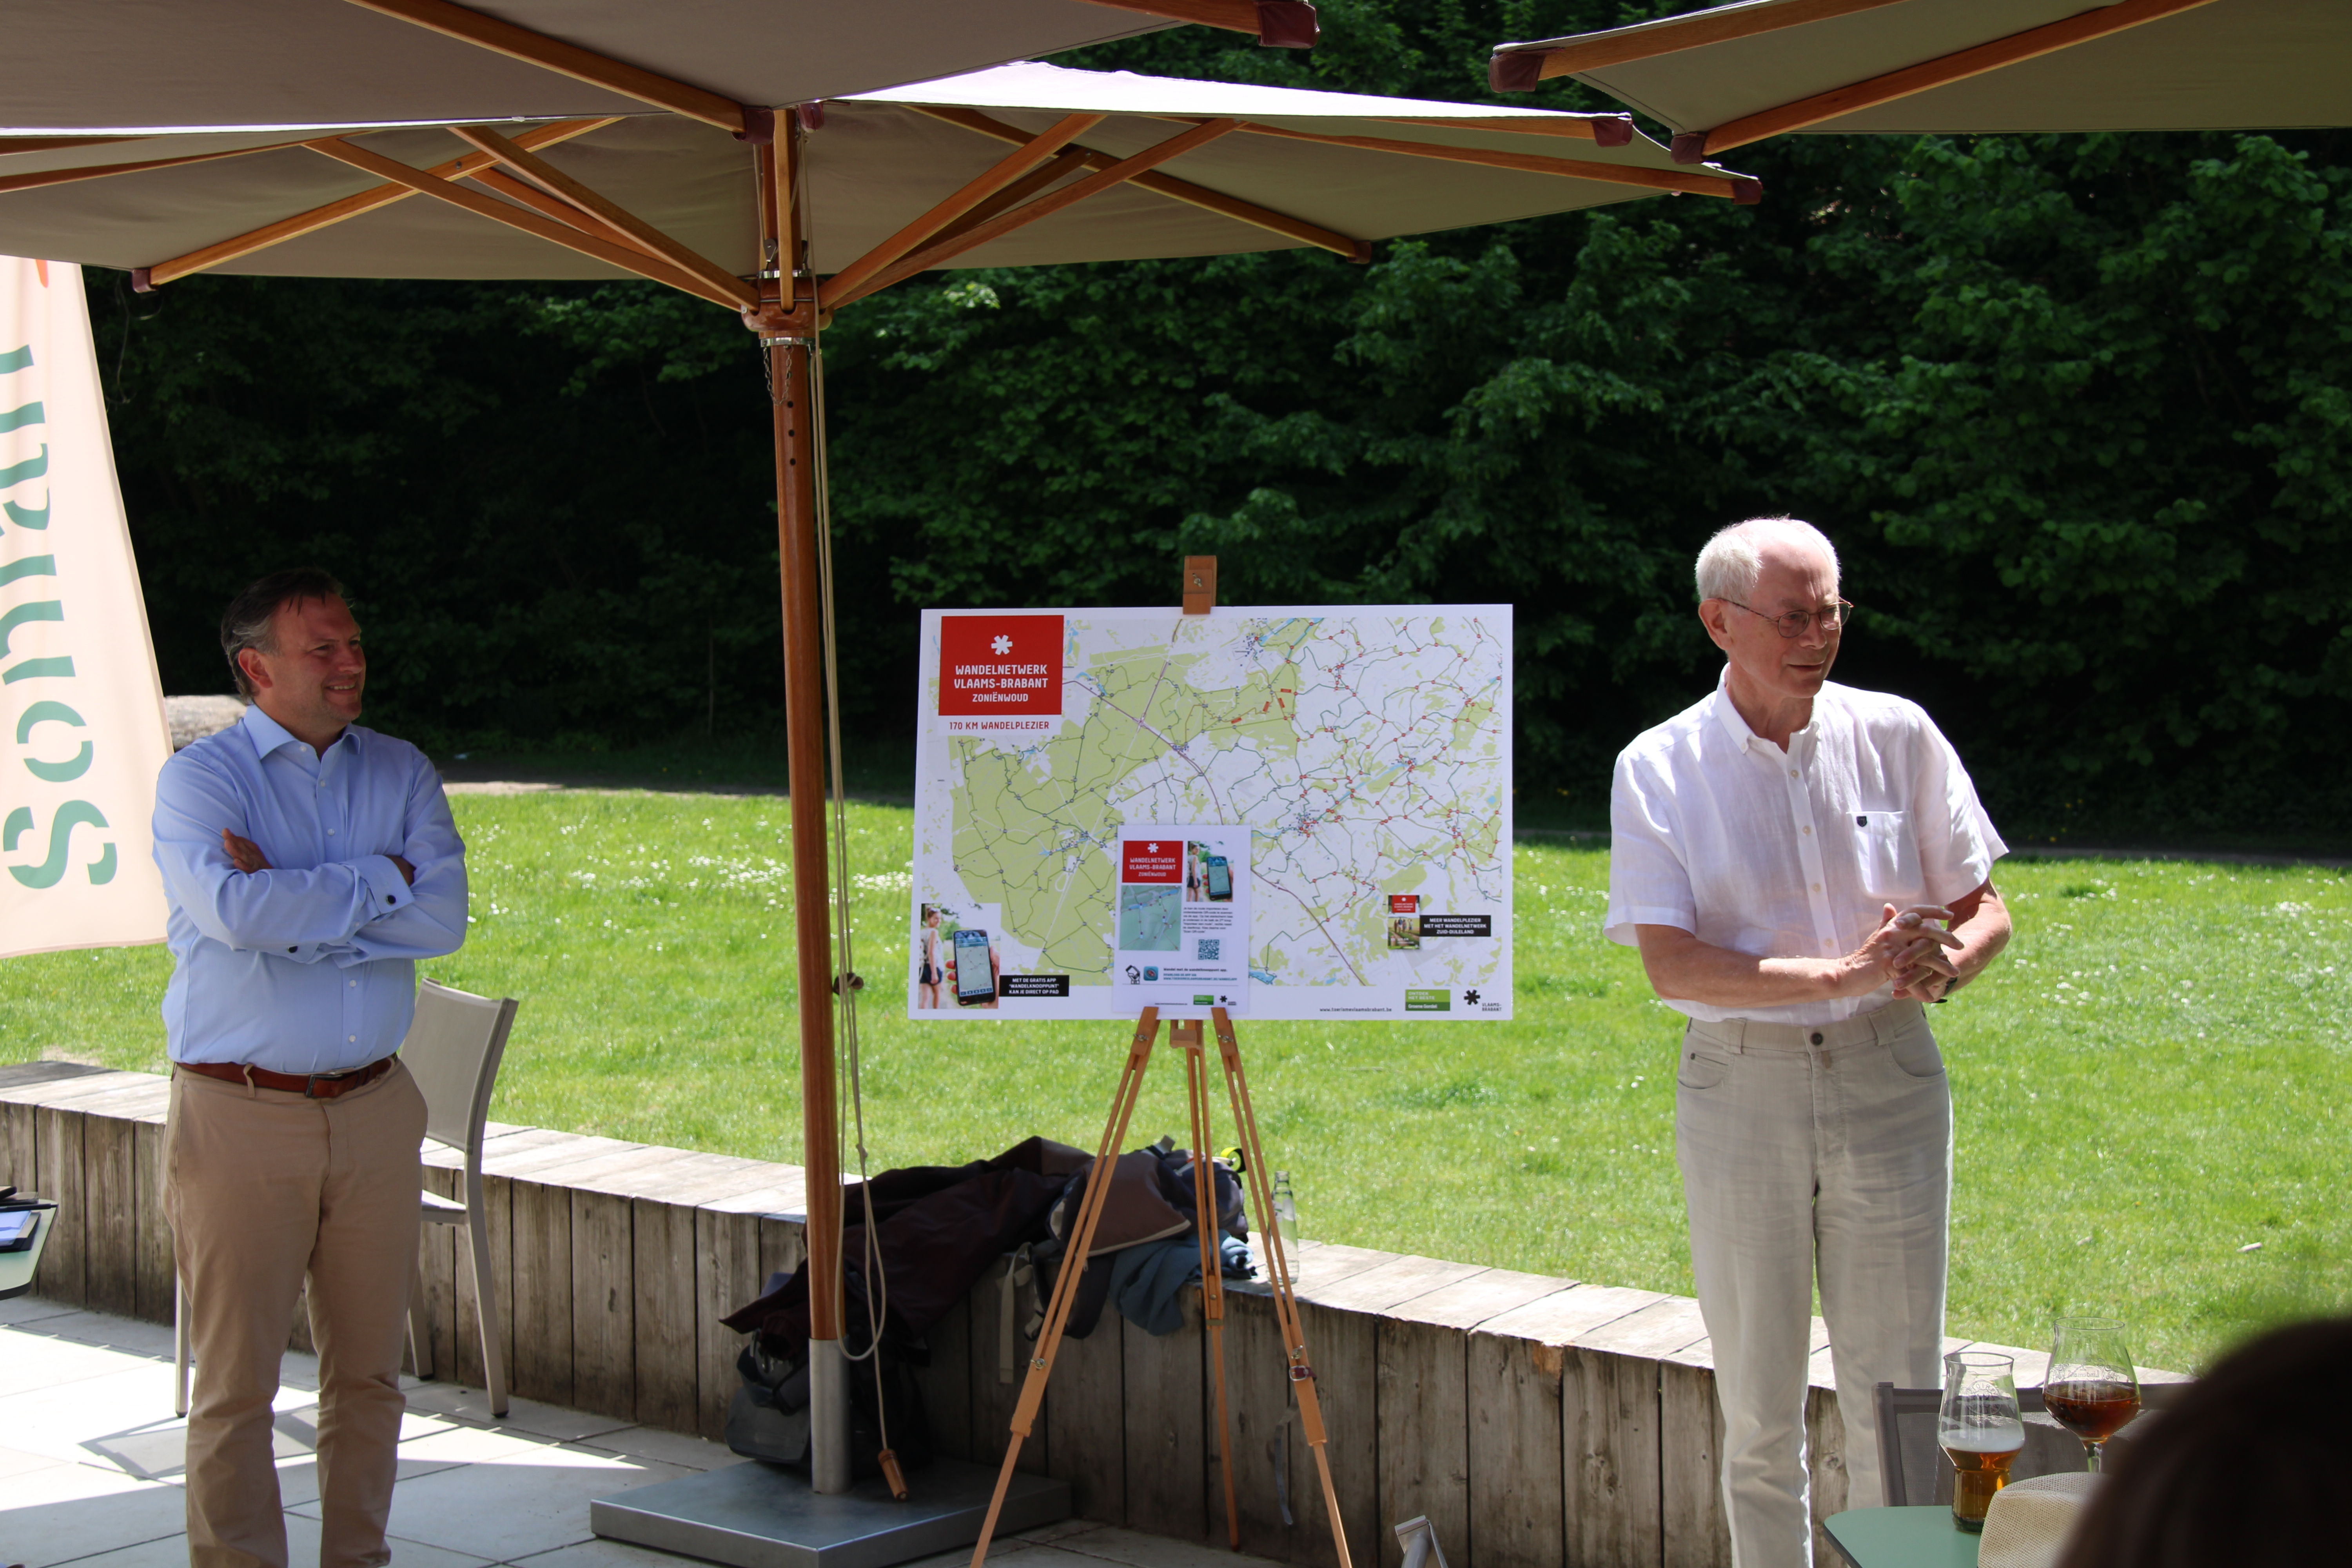 Gedeputeerde Gunther Coppens en Herman Van Rompuy, voorzitter van Stichting Zoniënwoud, stellen het nieuwe wandelnetwerk voor